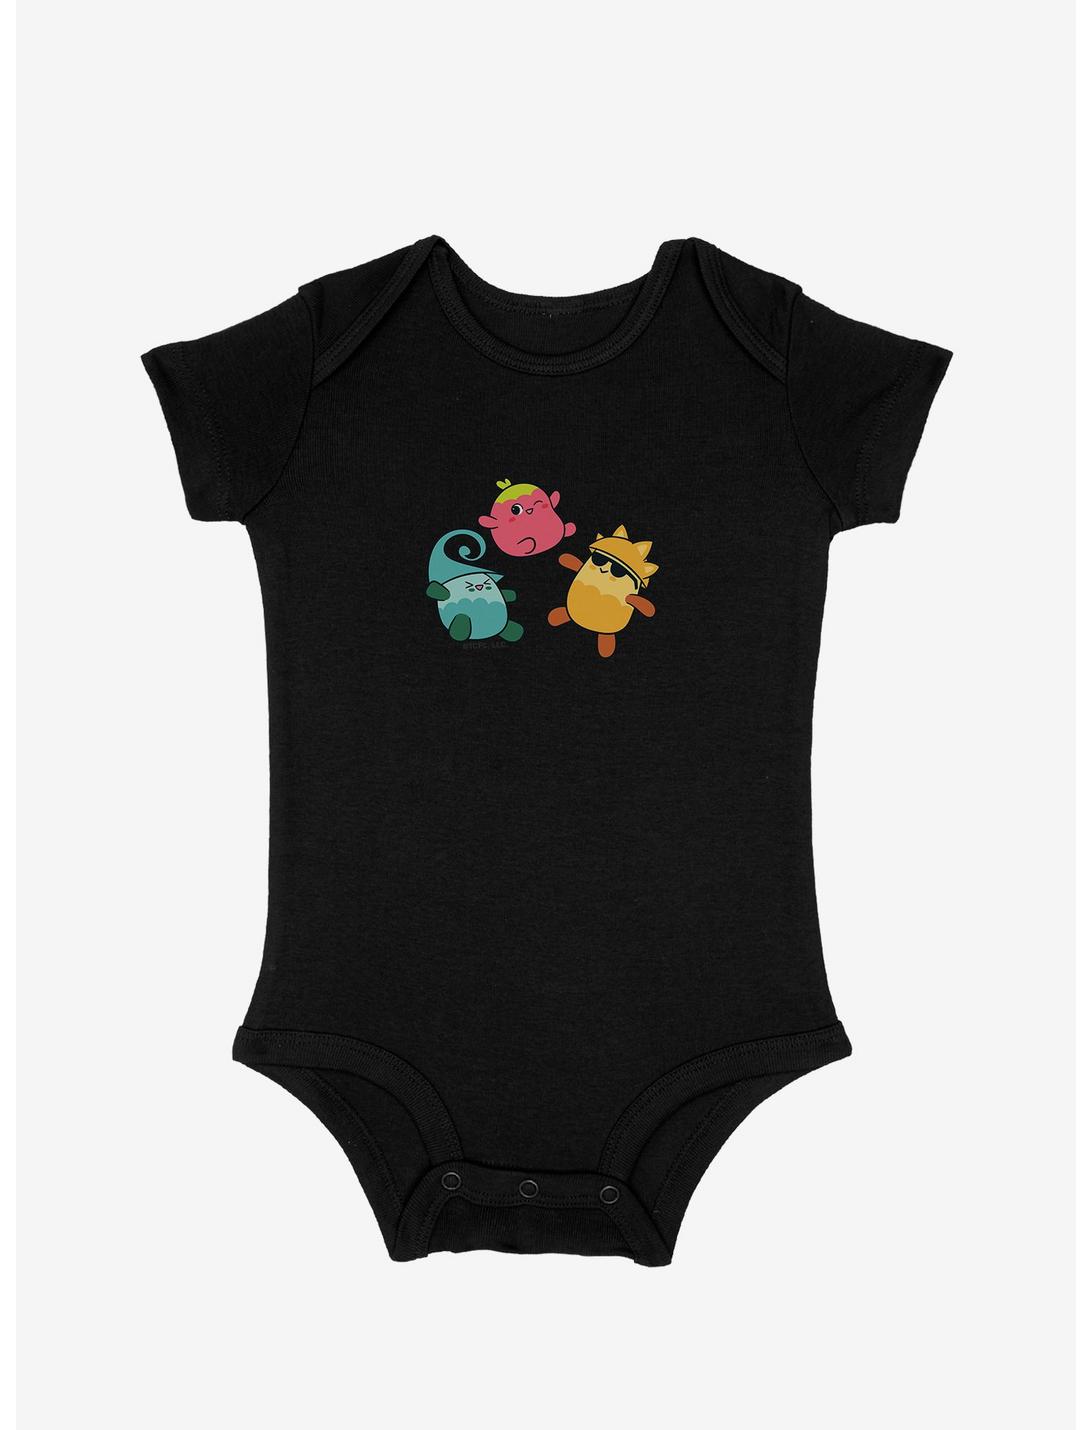 Care Bears Starberry Swirl Infant Bodysuit, , hi-res